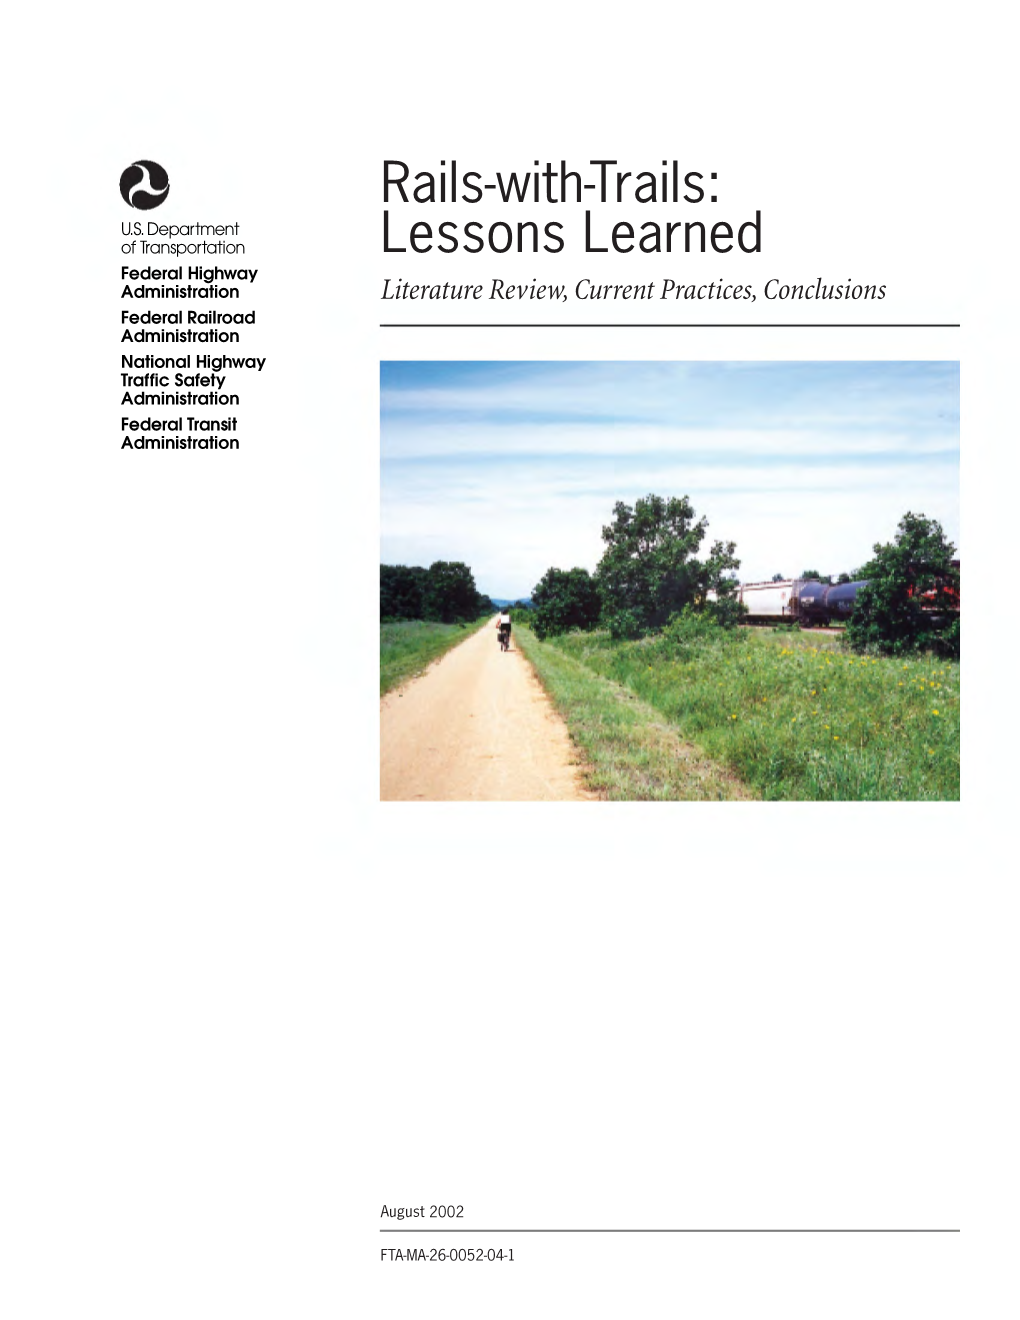 Rails with Trails (Wait,1998)